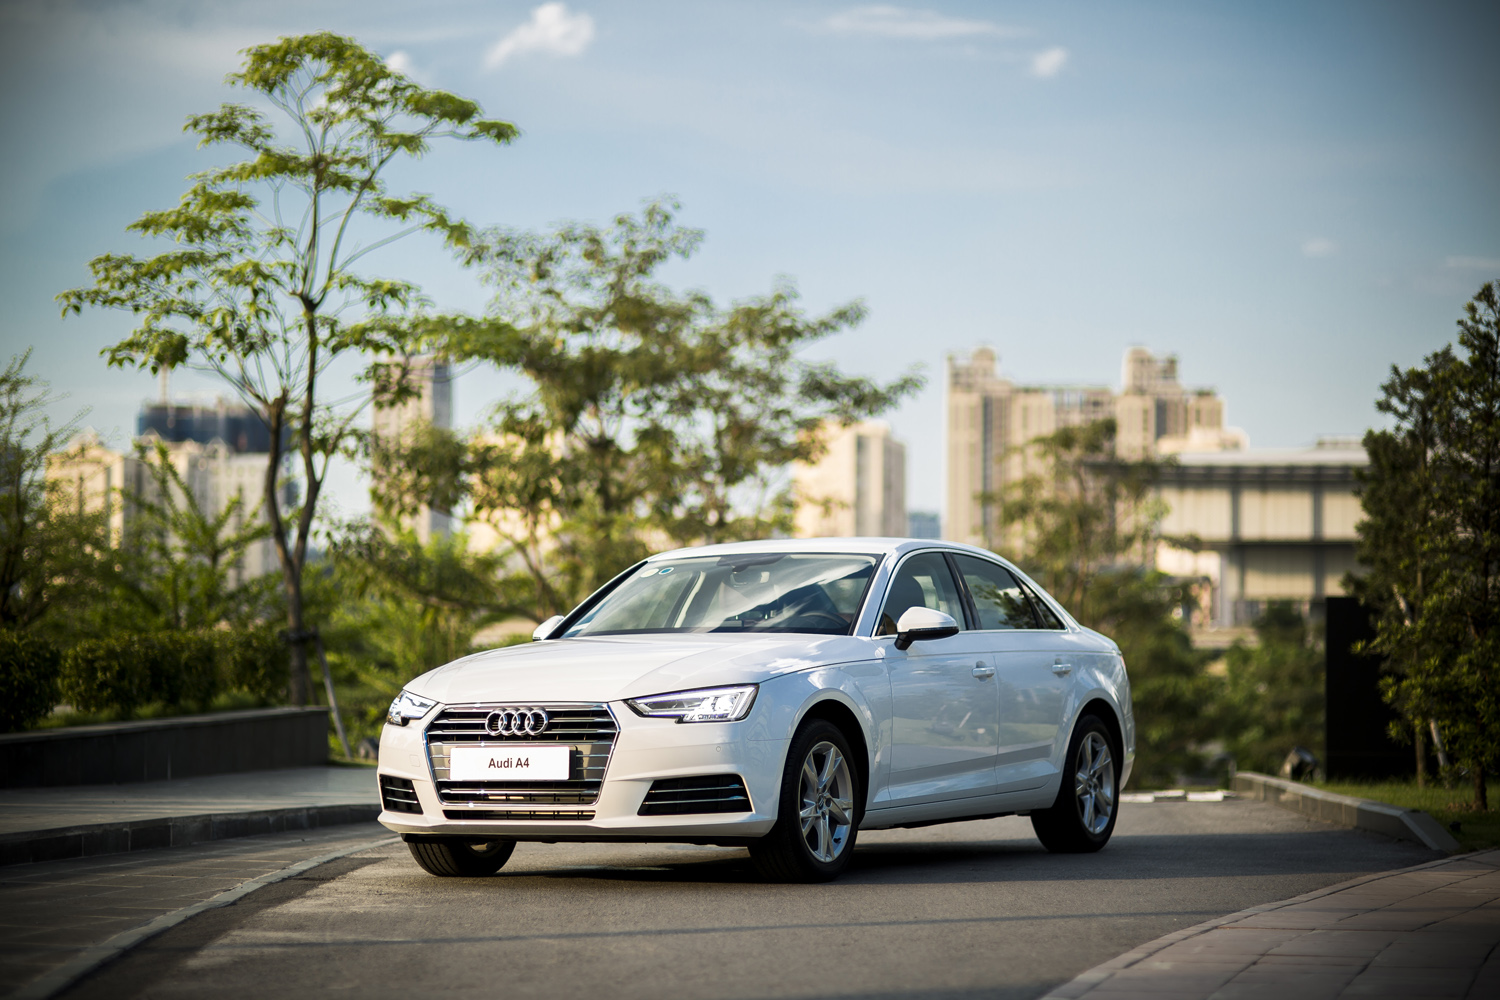 
Audi A4 thế hệ mới có hệ số cản 0,23 cùng mức khí thải CO2 chỉ 112 grams/km.
